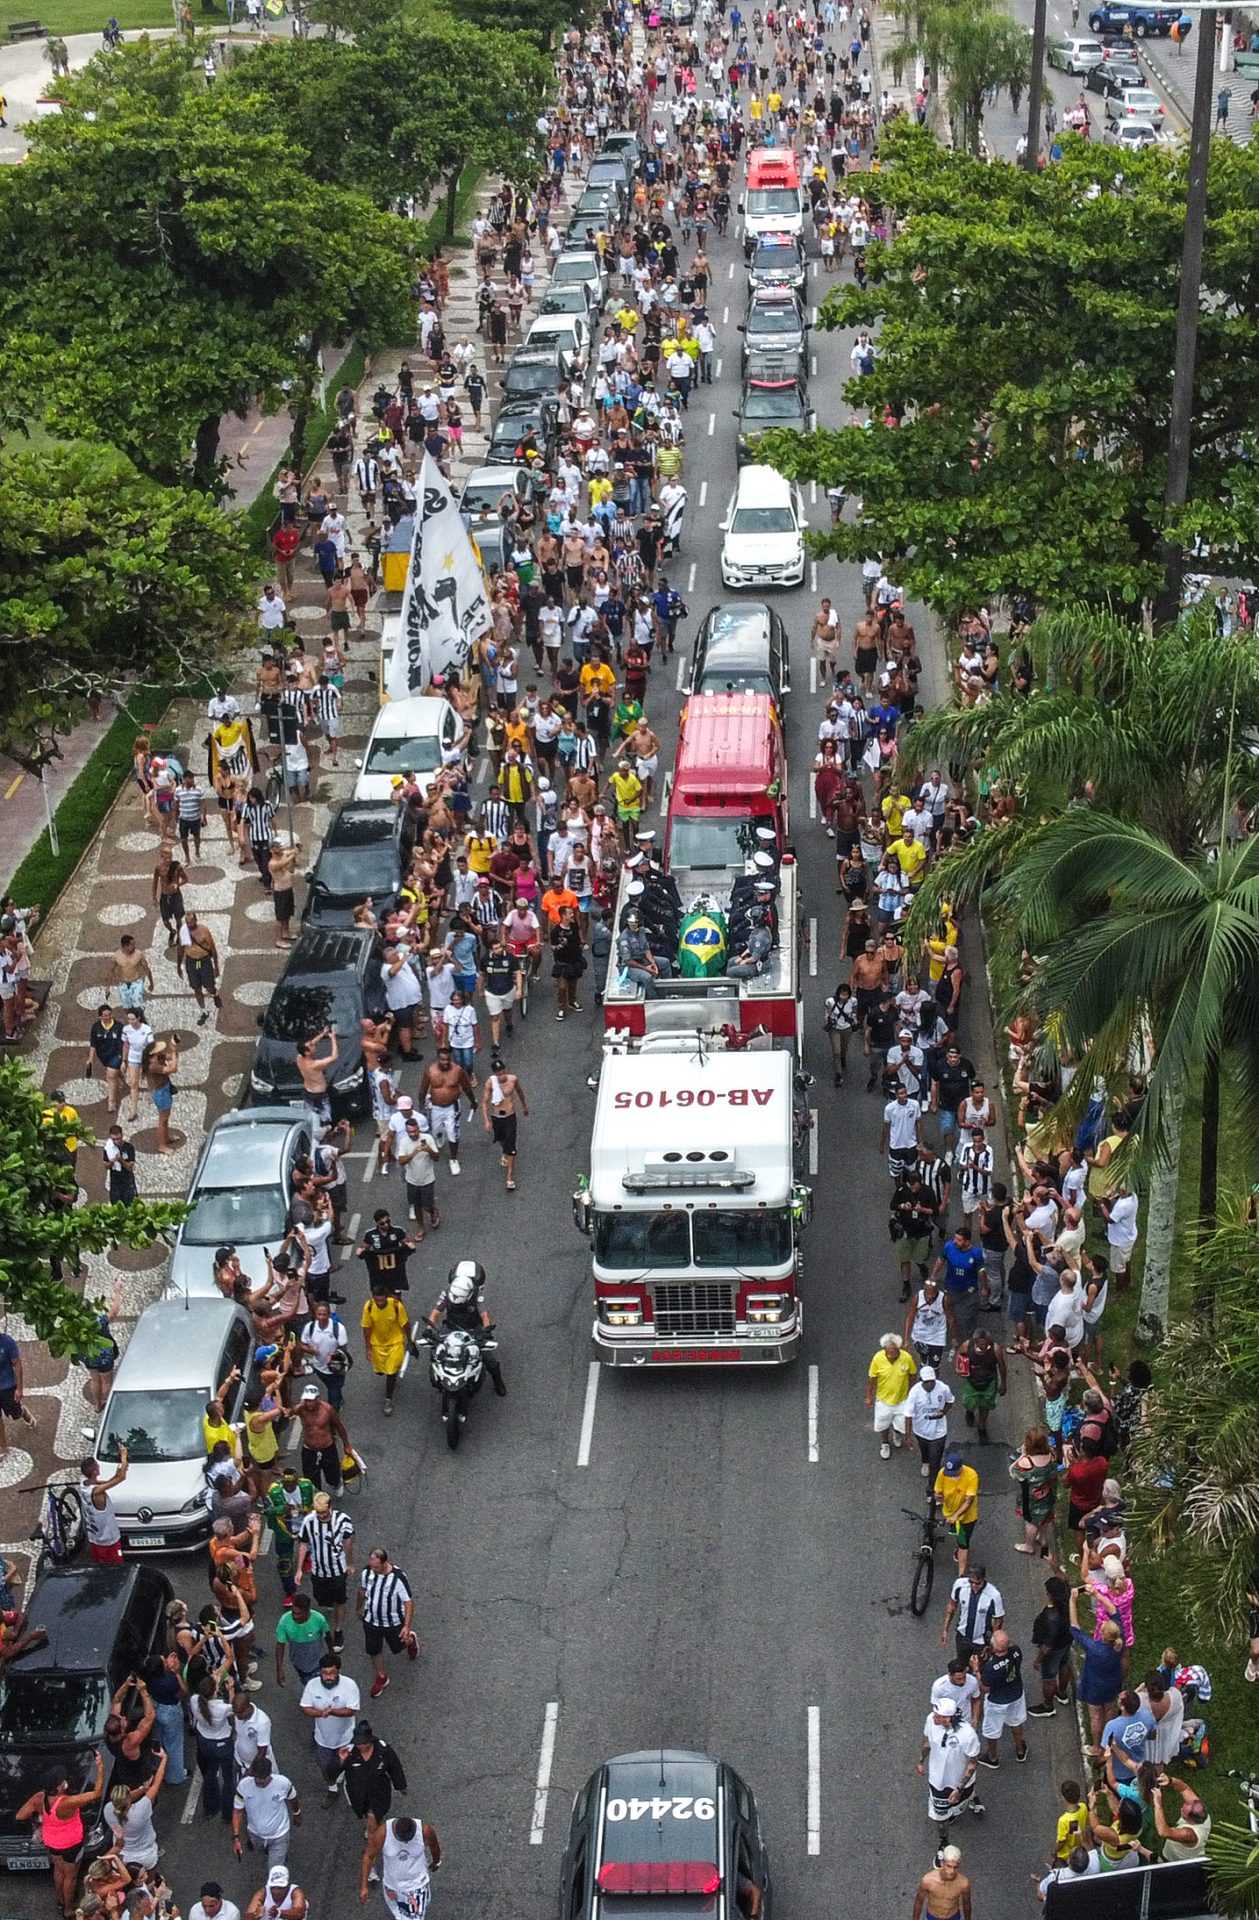 Vista aérea do caixão de Pelé durante cortejo pela cidade de Santos nesta terça-feira (3) - Foto: Marcello Zambrana/AGIF/Estadão Conteúdo